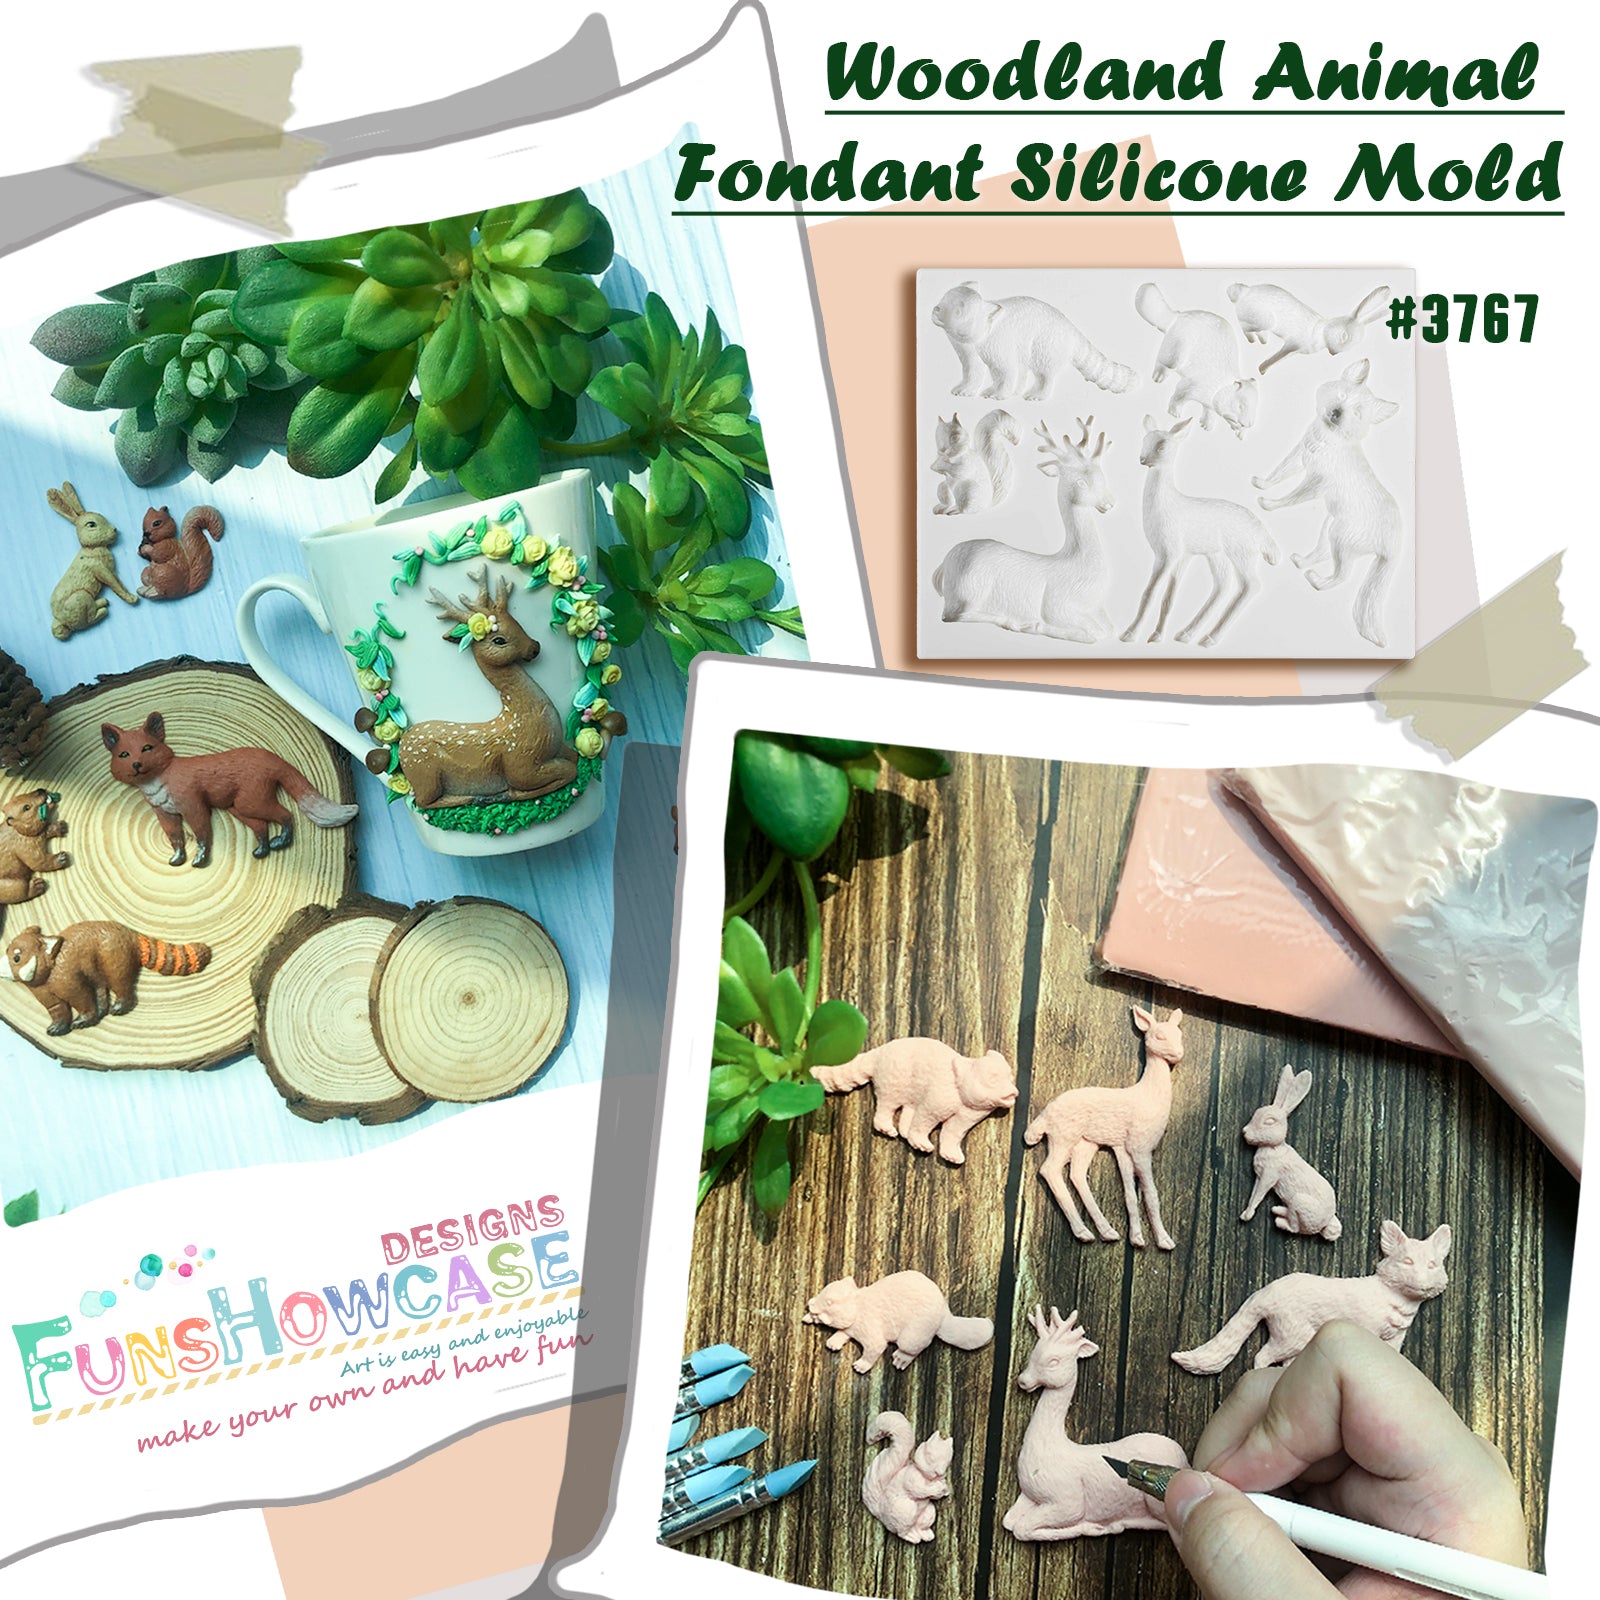 Funshowcase Woodland Animal Fondant Silicone Mold 7-Shape 1-3.3inch